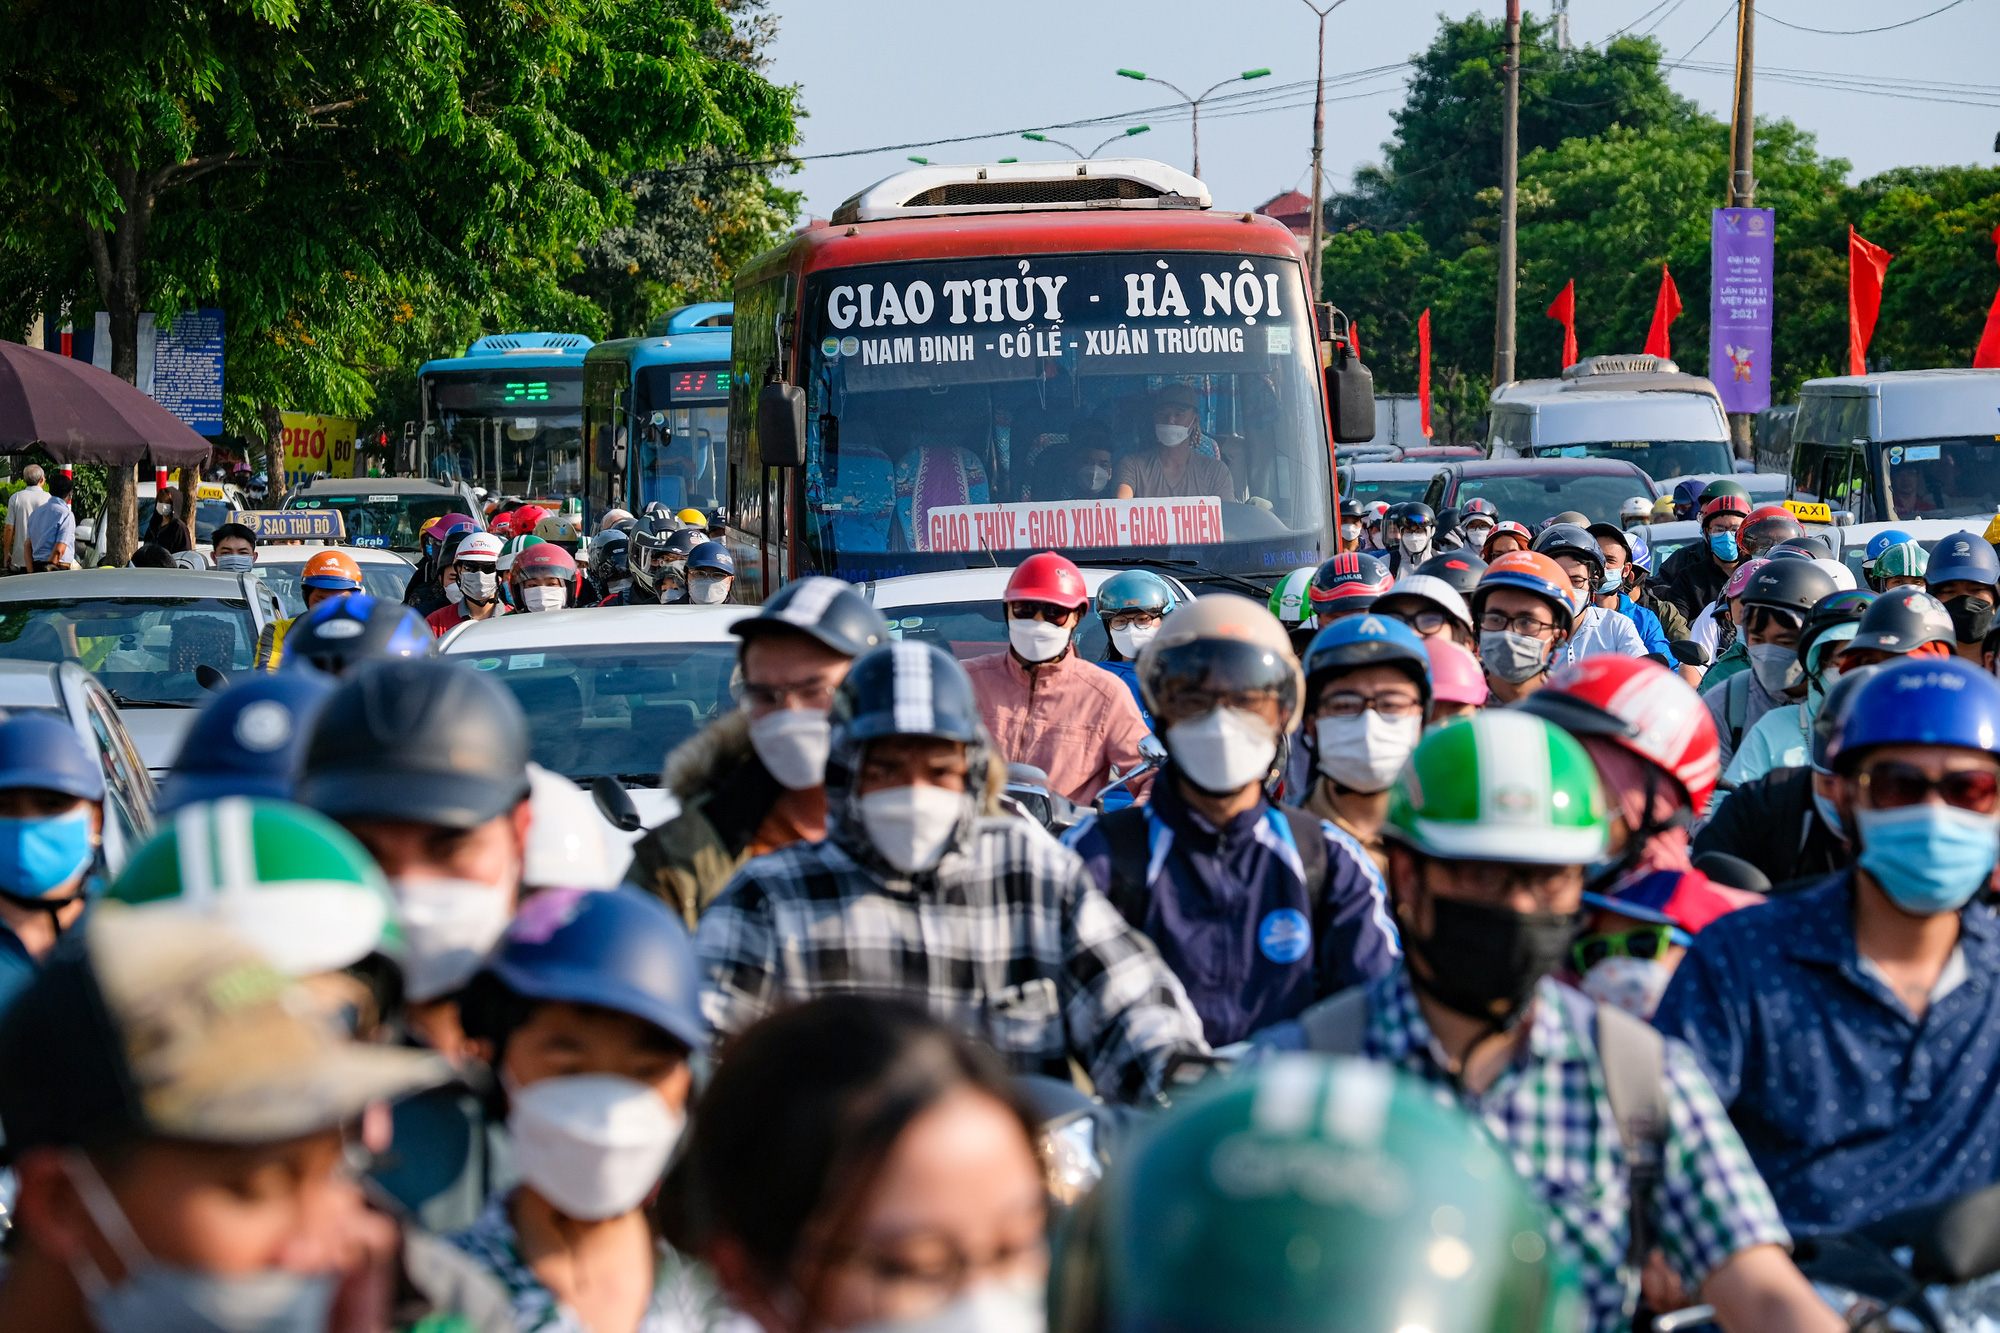 Người dân ùn ùn quay trở lại Hà Nội dù chưa kết thúc kỳ nghỉ lễ vì nỗi sợ tắc đường, giao thông khu vực cửa ngõ ùn ứ-2